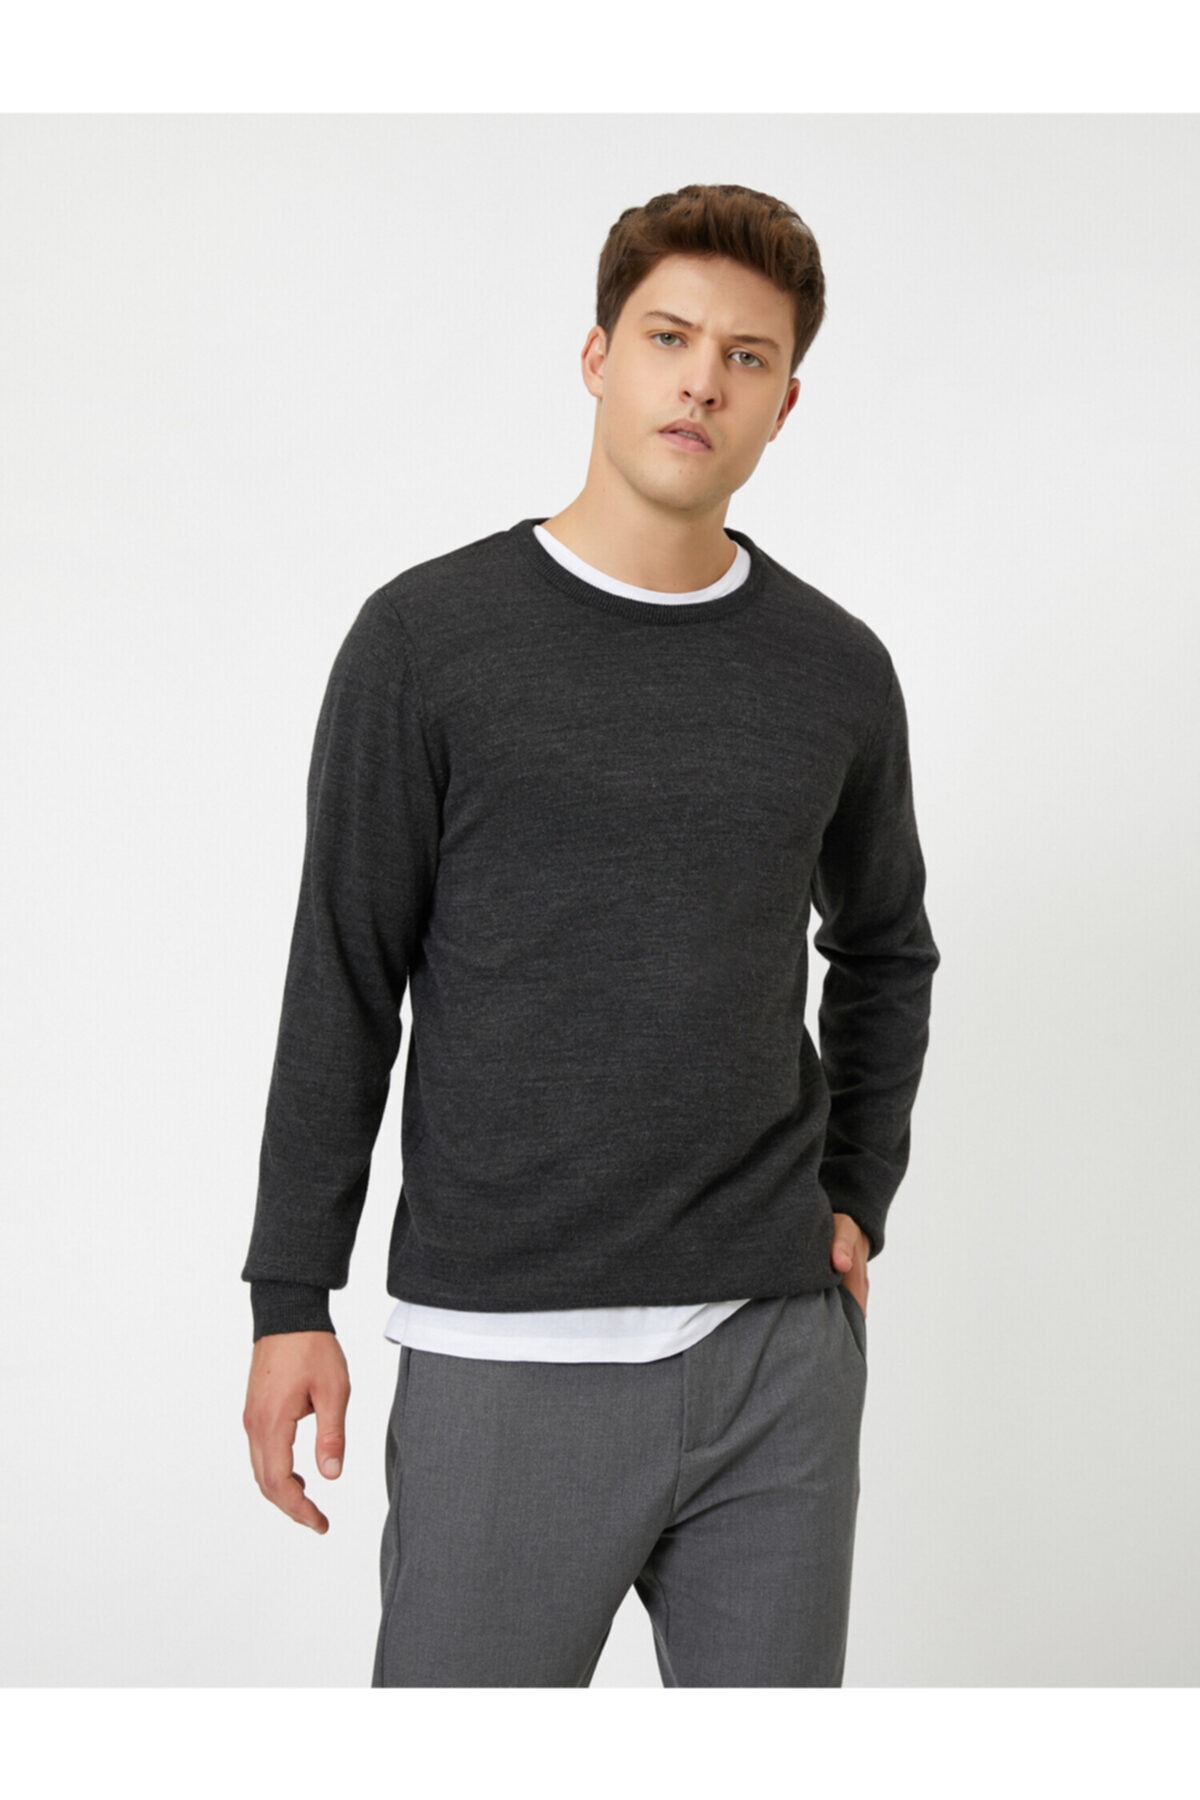 Мужской свитер антрацитового цвета Koton, серый